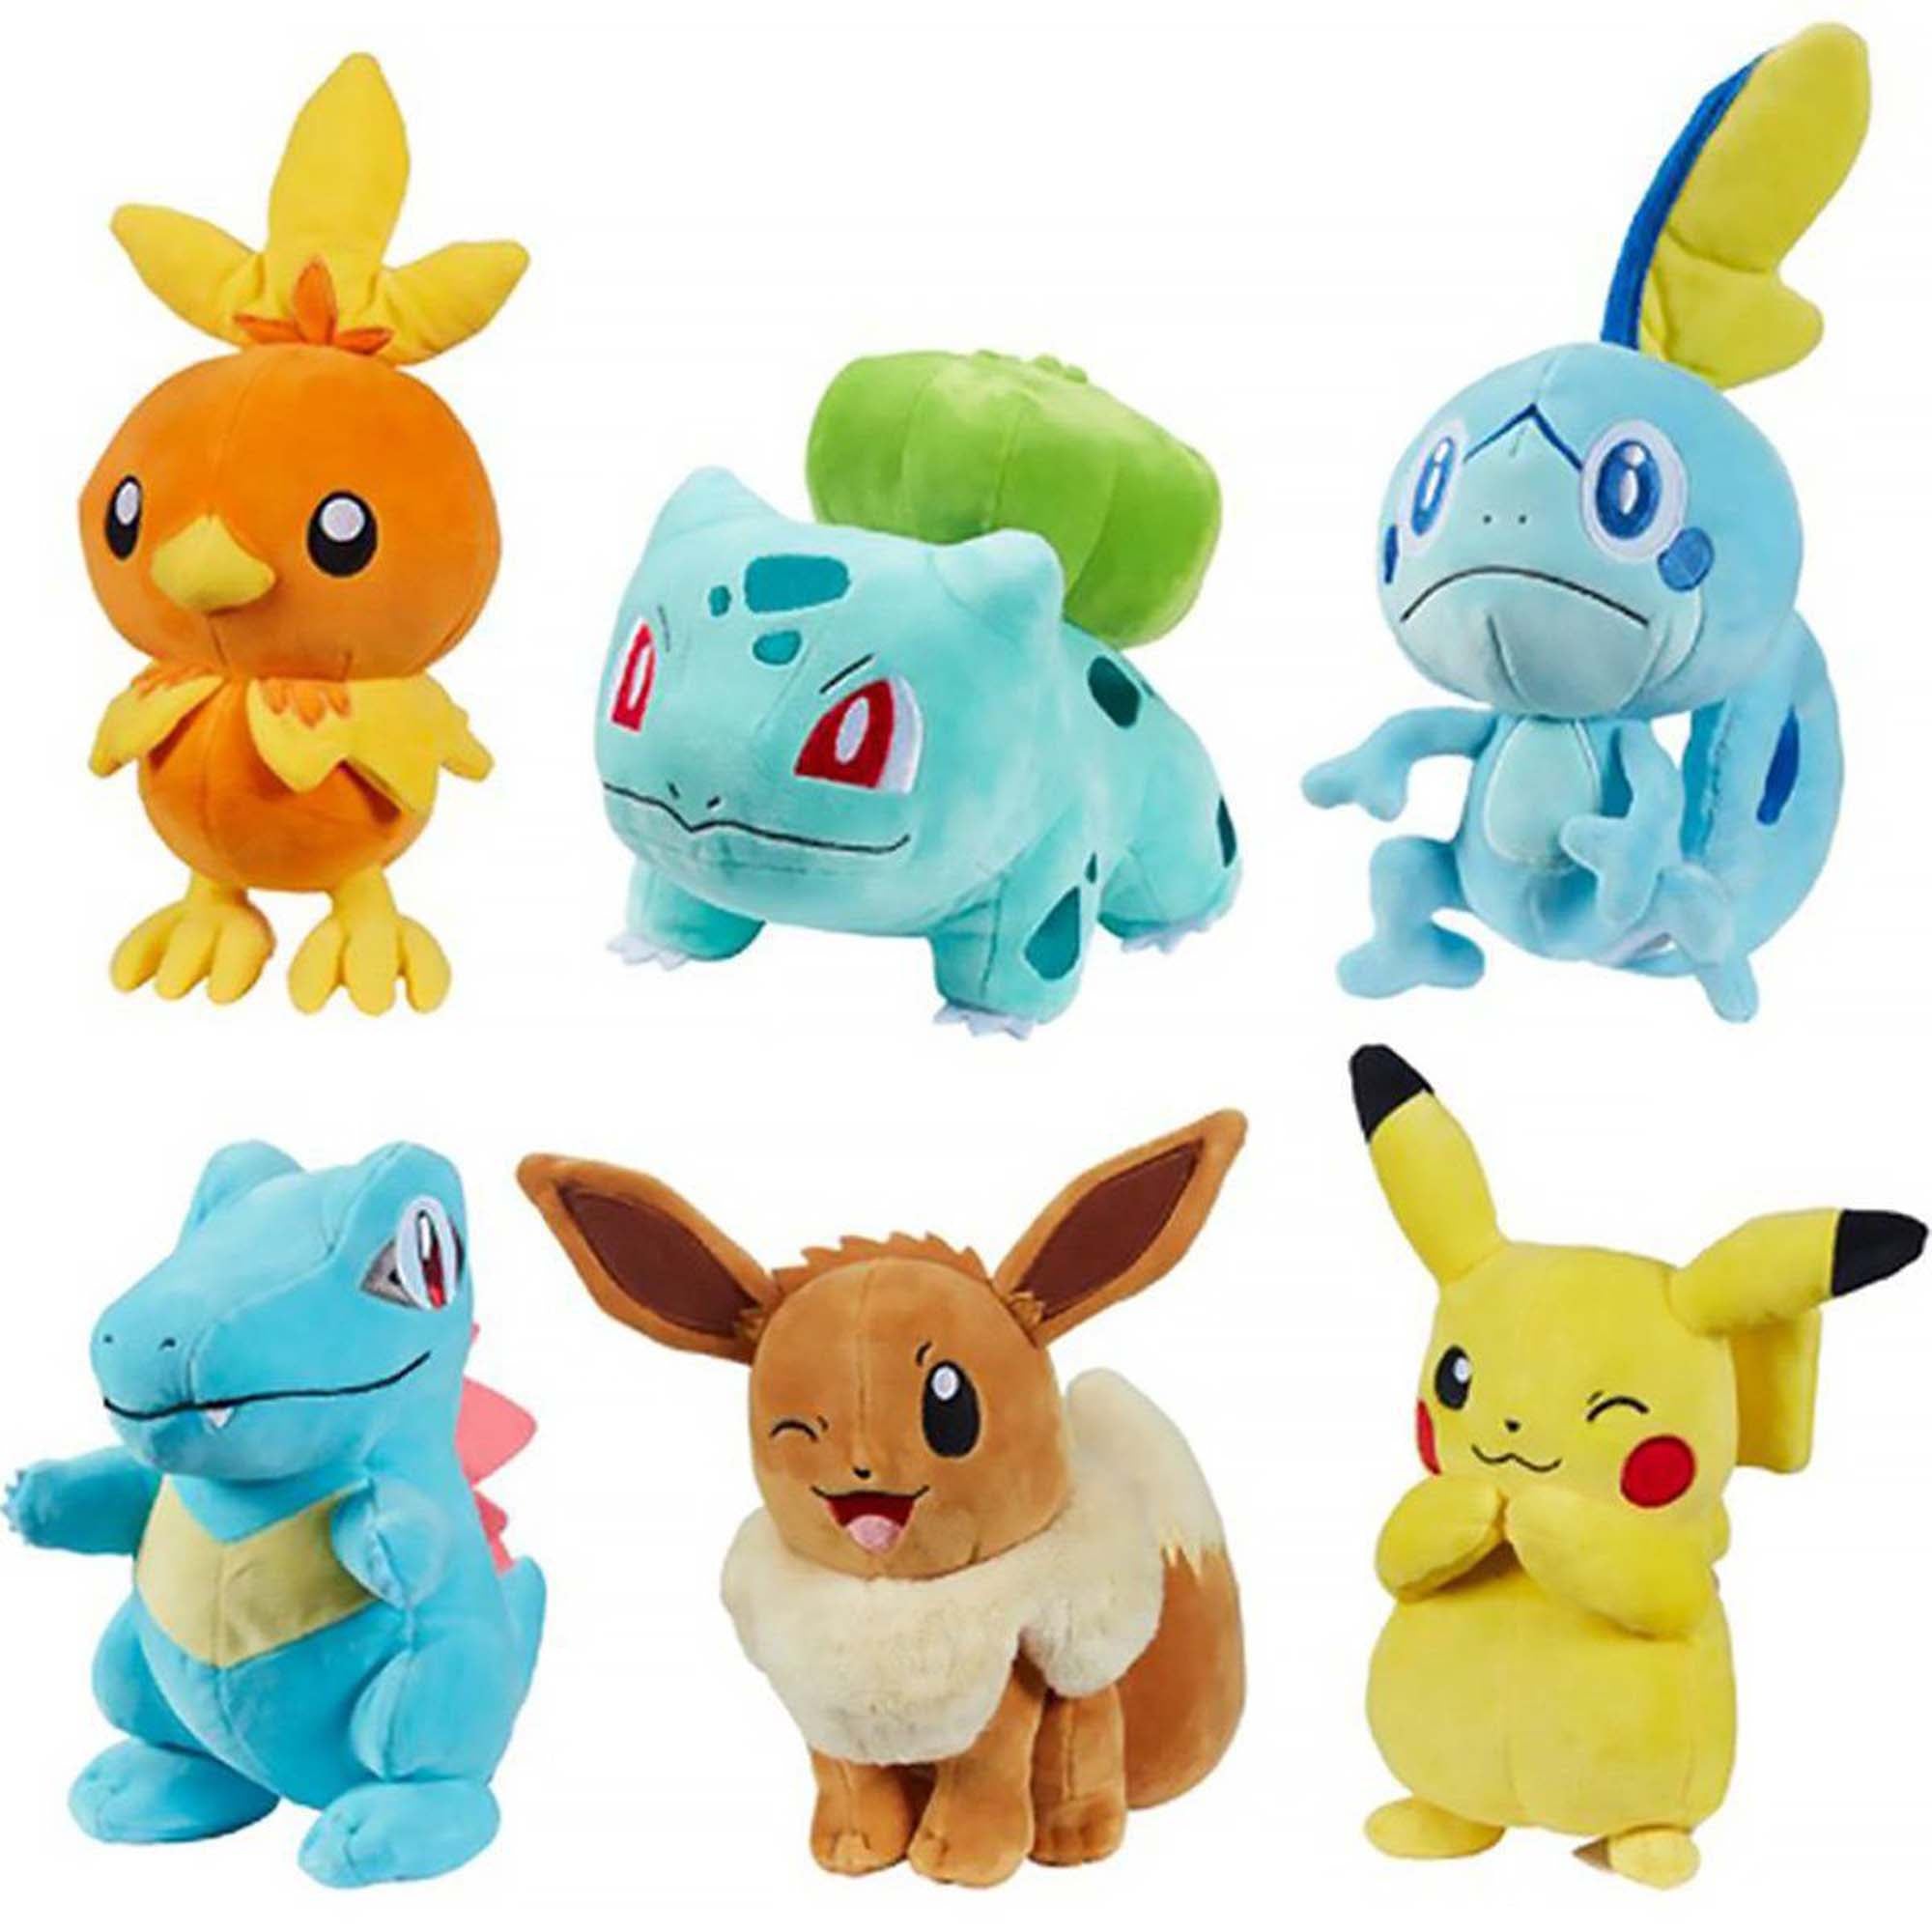 Figurine Pokémon, 2 pouces, assortiment, 1 unité